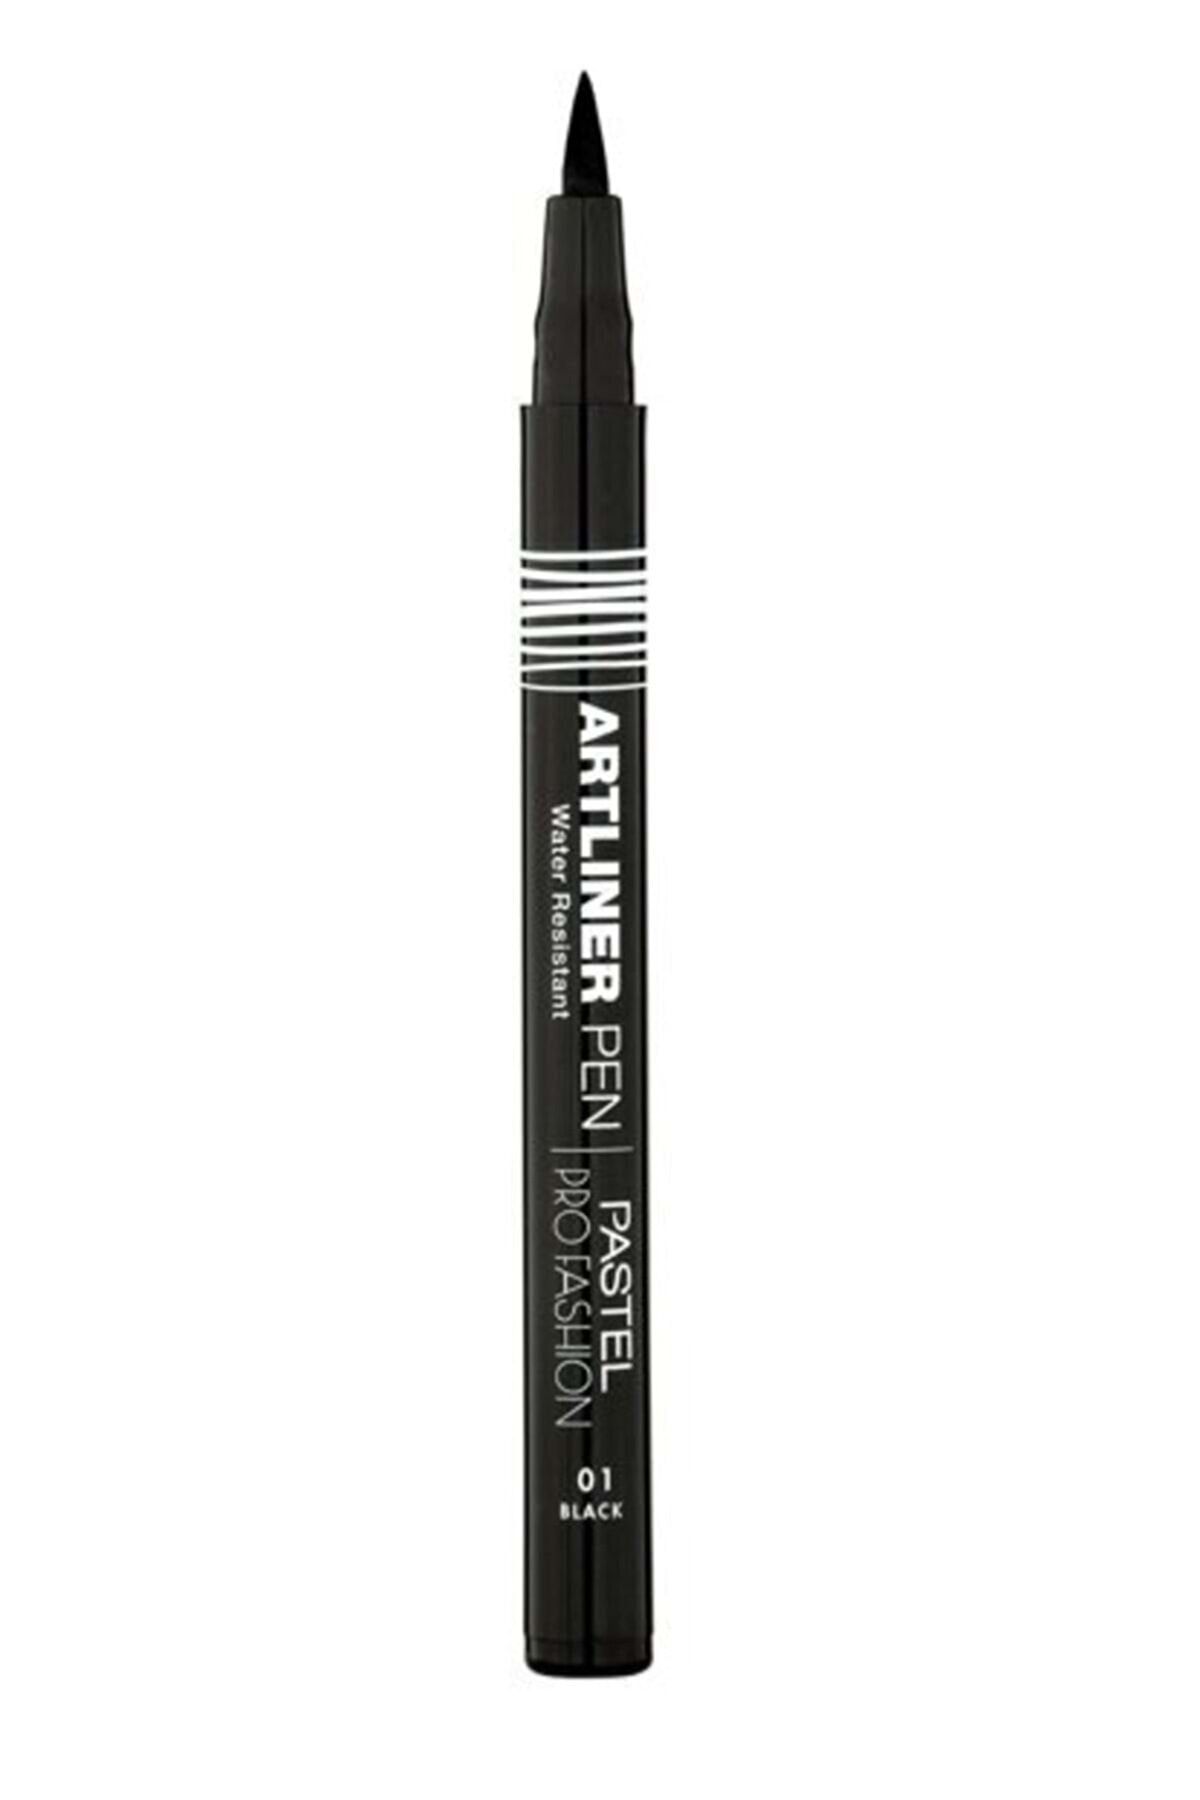 Pastel Marka Siyah Kalem Eyeliner - Profashion Artliner Pen No 01 Black 8690644010538 Ölçü: S